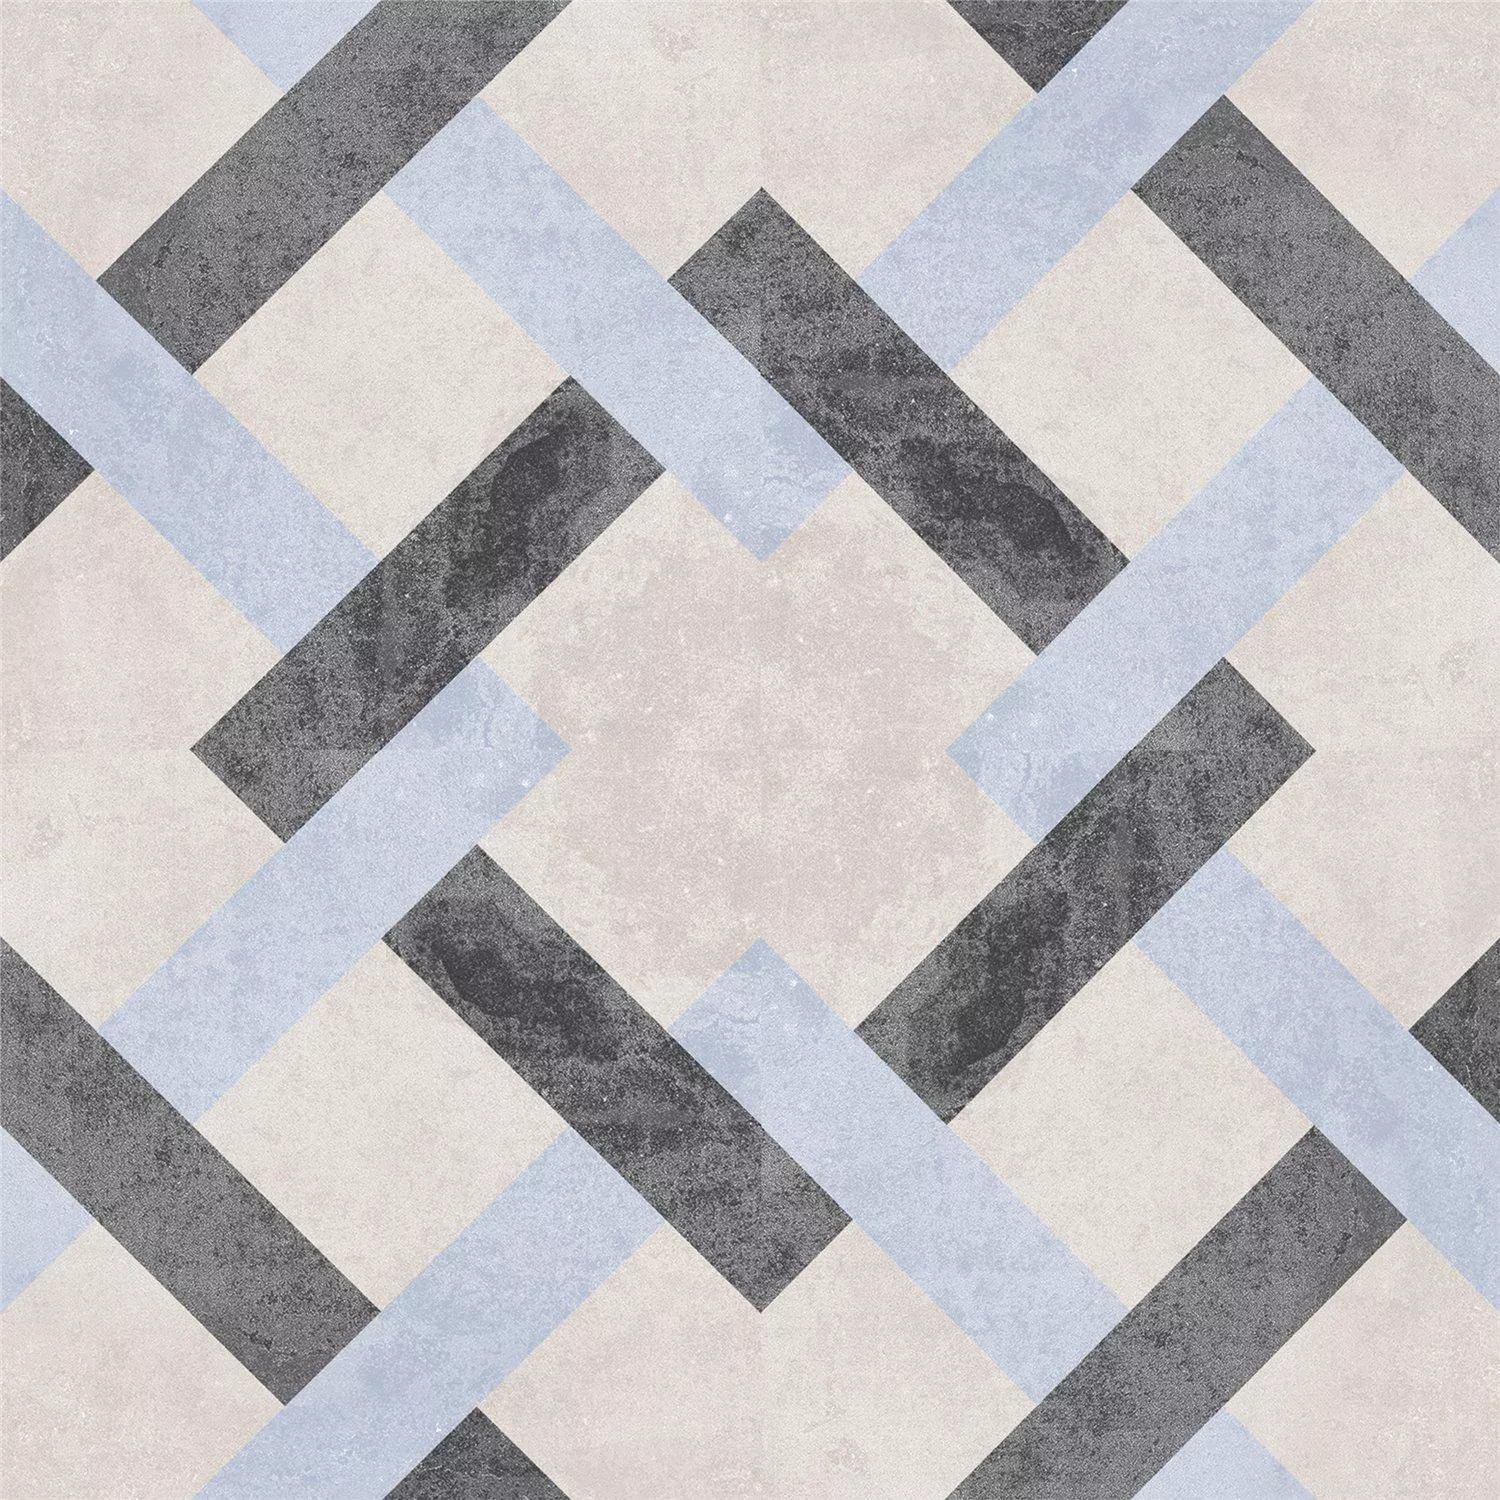 Cement Tiles Retro Optic Gris Floor Tiles Pablo 18,6x18,6cm